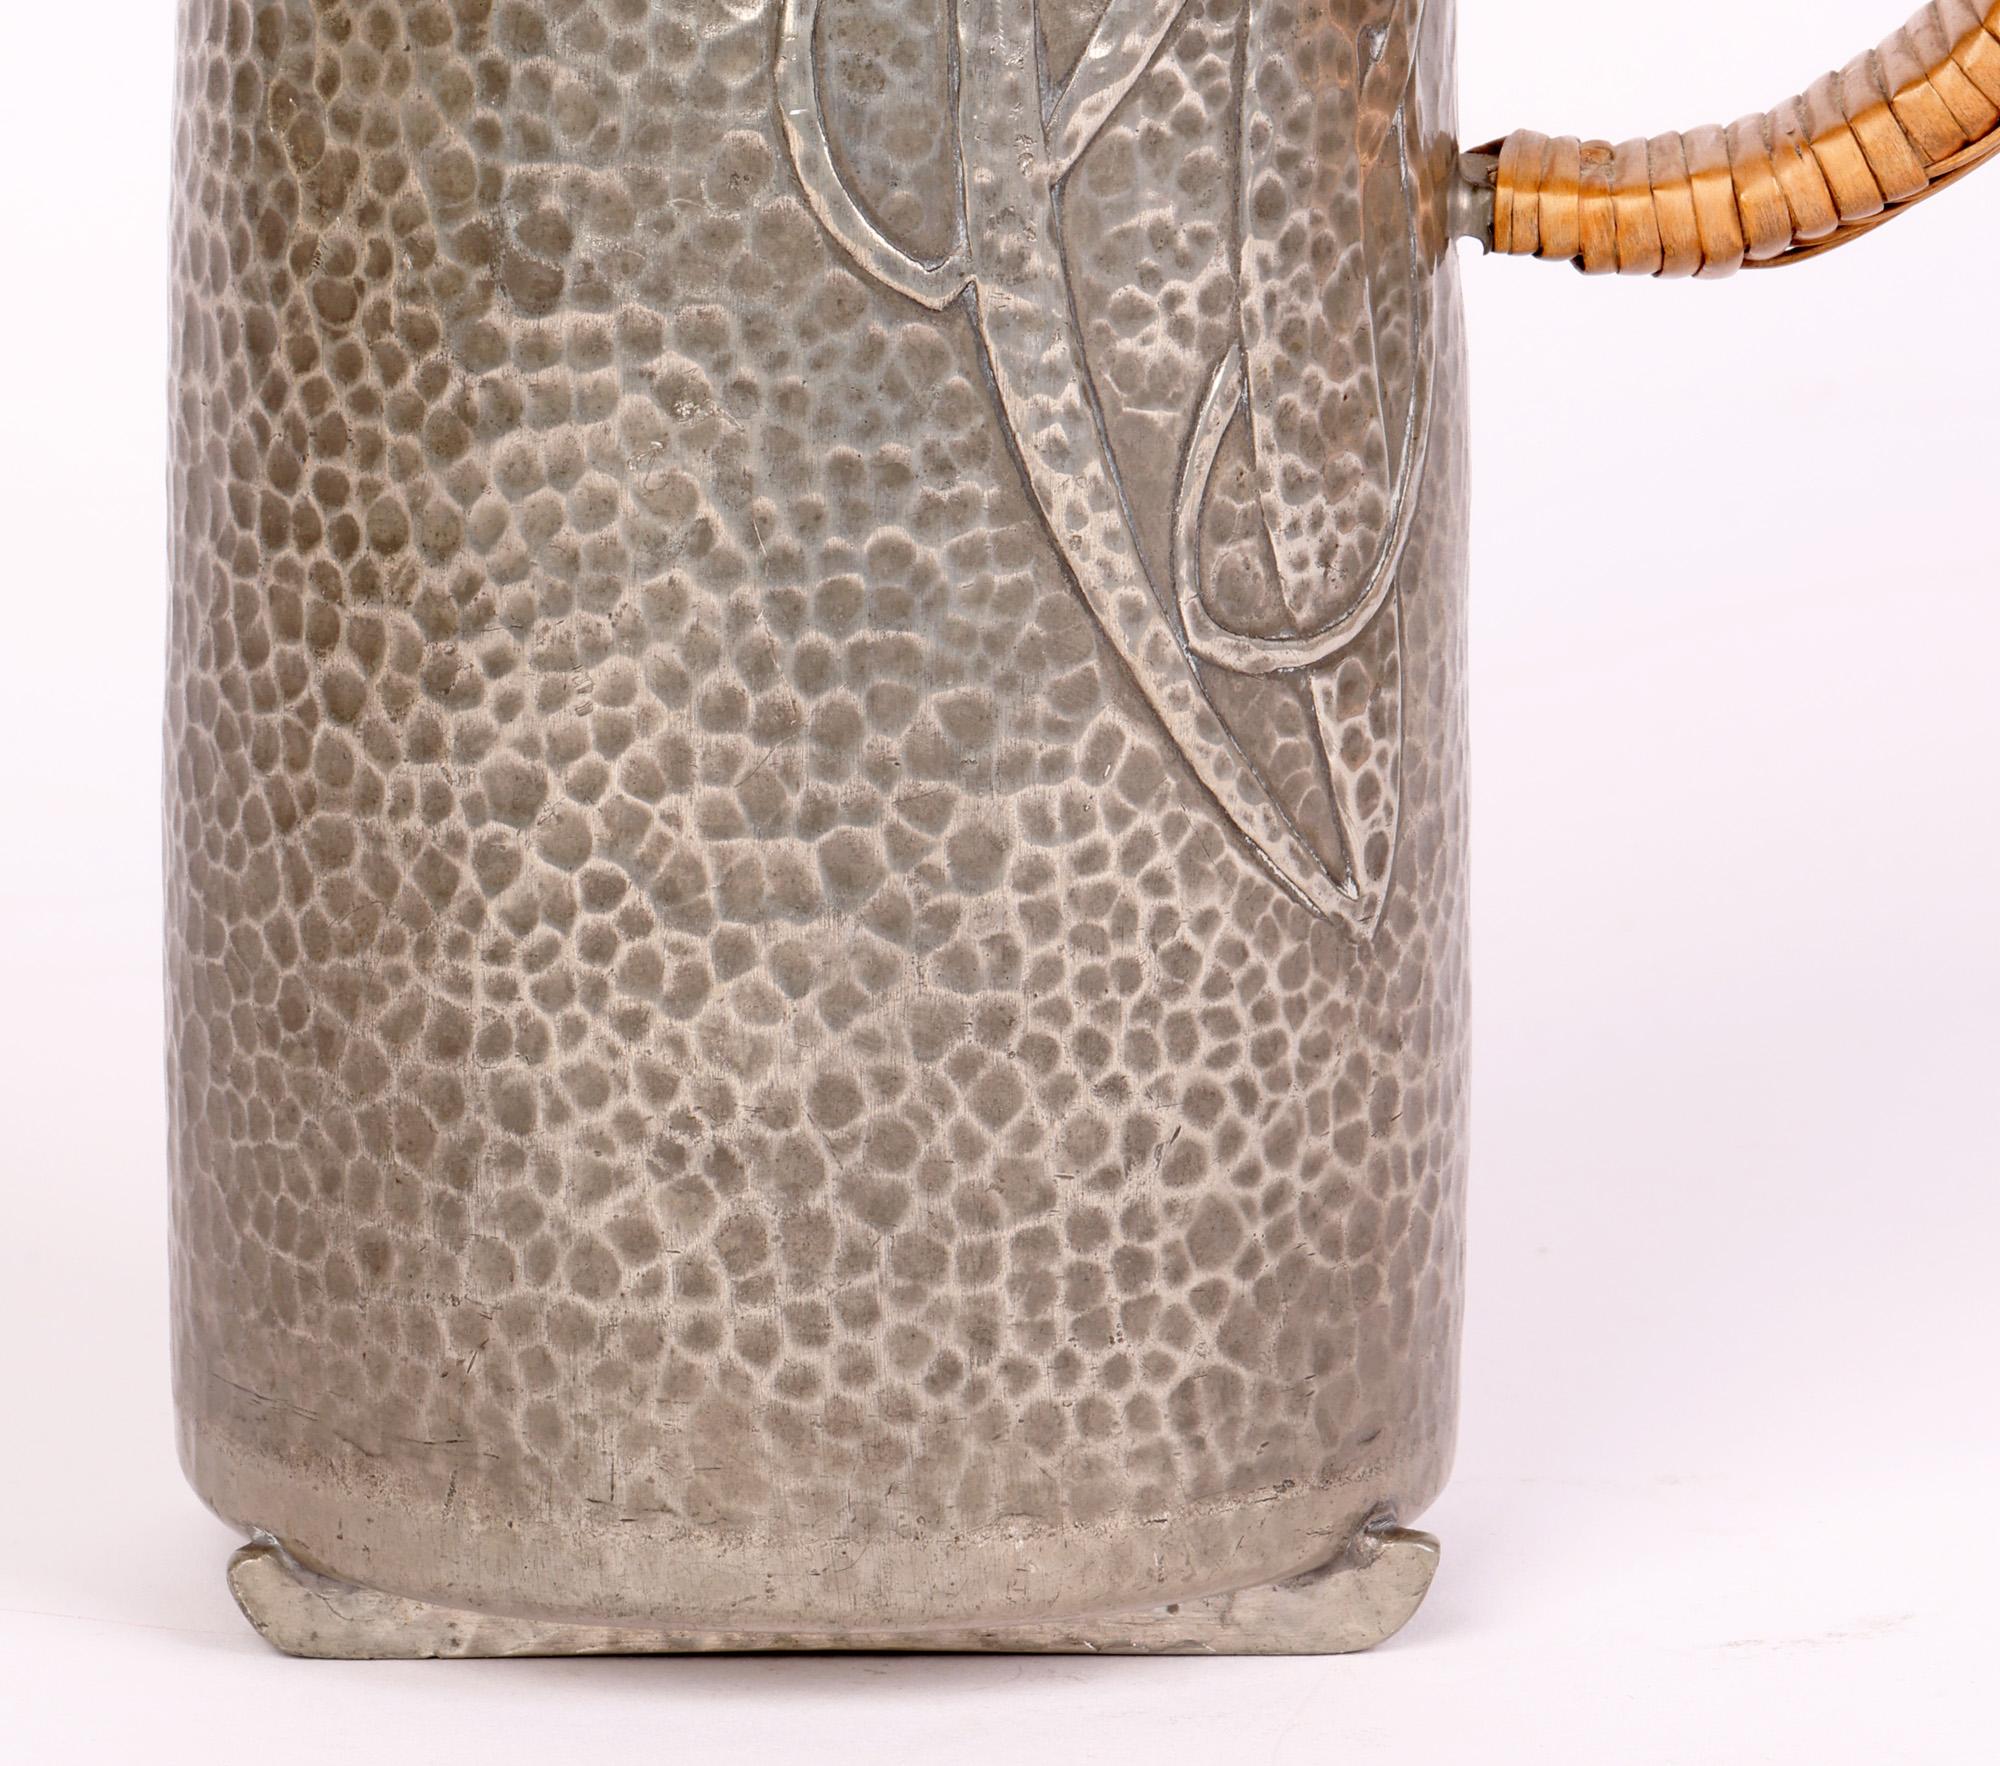 Eine stilvolle Tudric-Zinnkanne im Jugendstil mit stilisierten Pilzmotiven des bekannten Designers Archibald Knox (Brite, 1864-1933) aus der Zeit um 1904. 

Viele dieser Stücke wurden von Liberty & Co, London, hergestellt und vertrieben, wobei